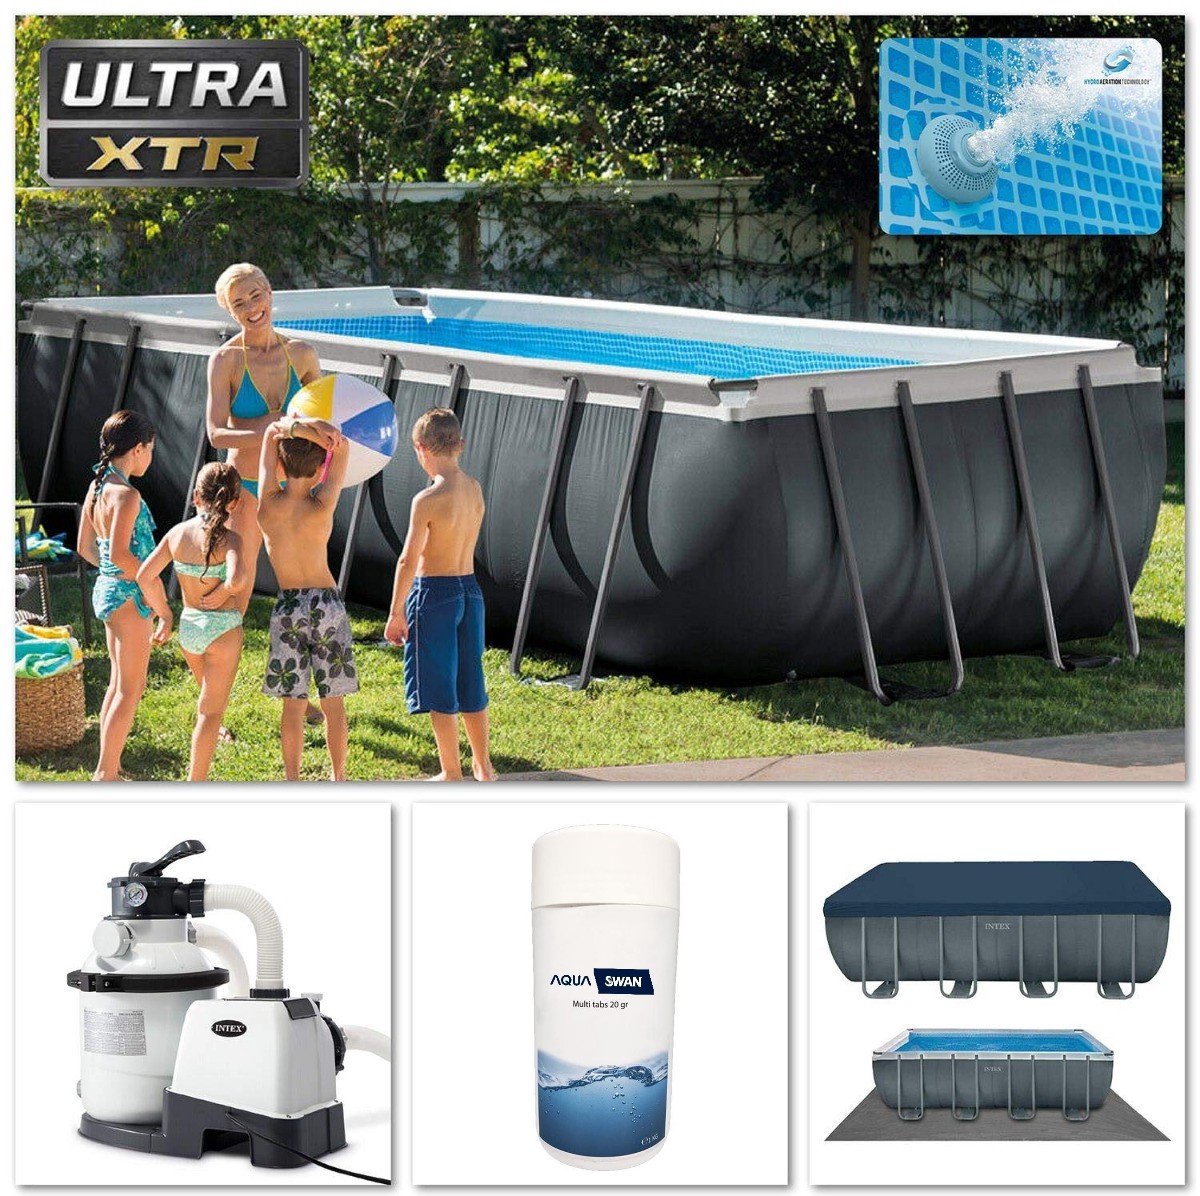 Intex Zwembad Ultra XTR Frame | Afmeting 975x488x132 cm | Inclusief Aquaswan onderhoudspakket & opblaasbare zwaan | Inclusief afdekzeil | Inclusief filterpomp | Inclusief grondzeil | Inclusief ladder